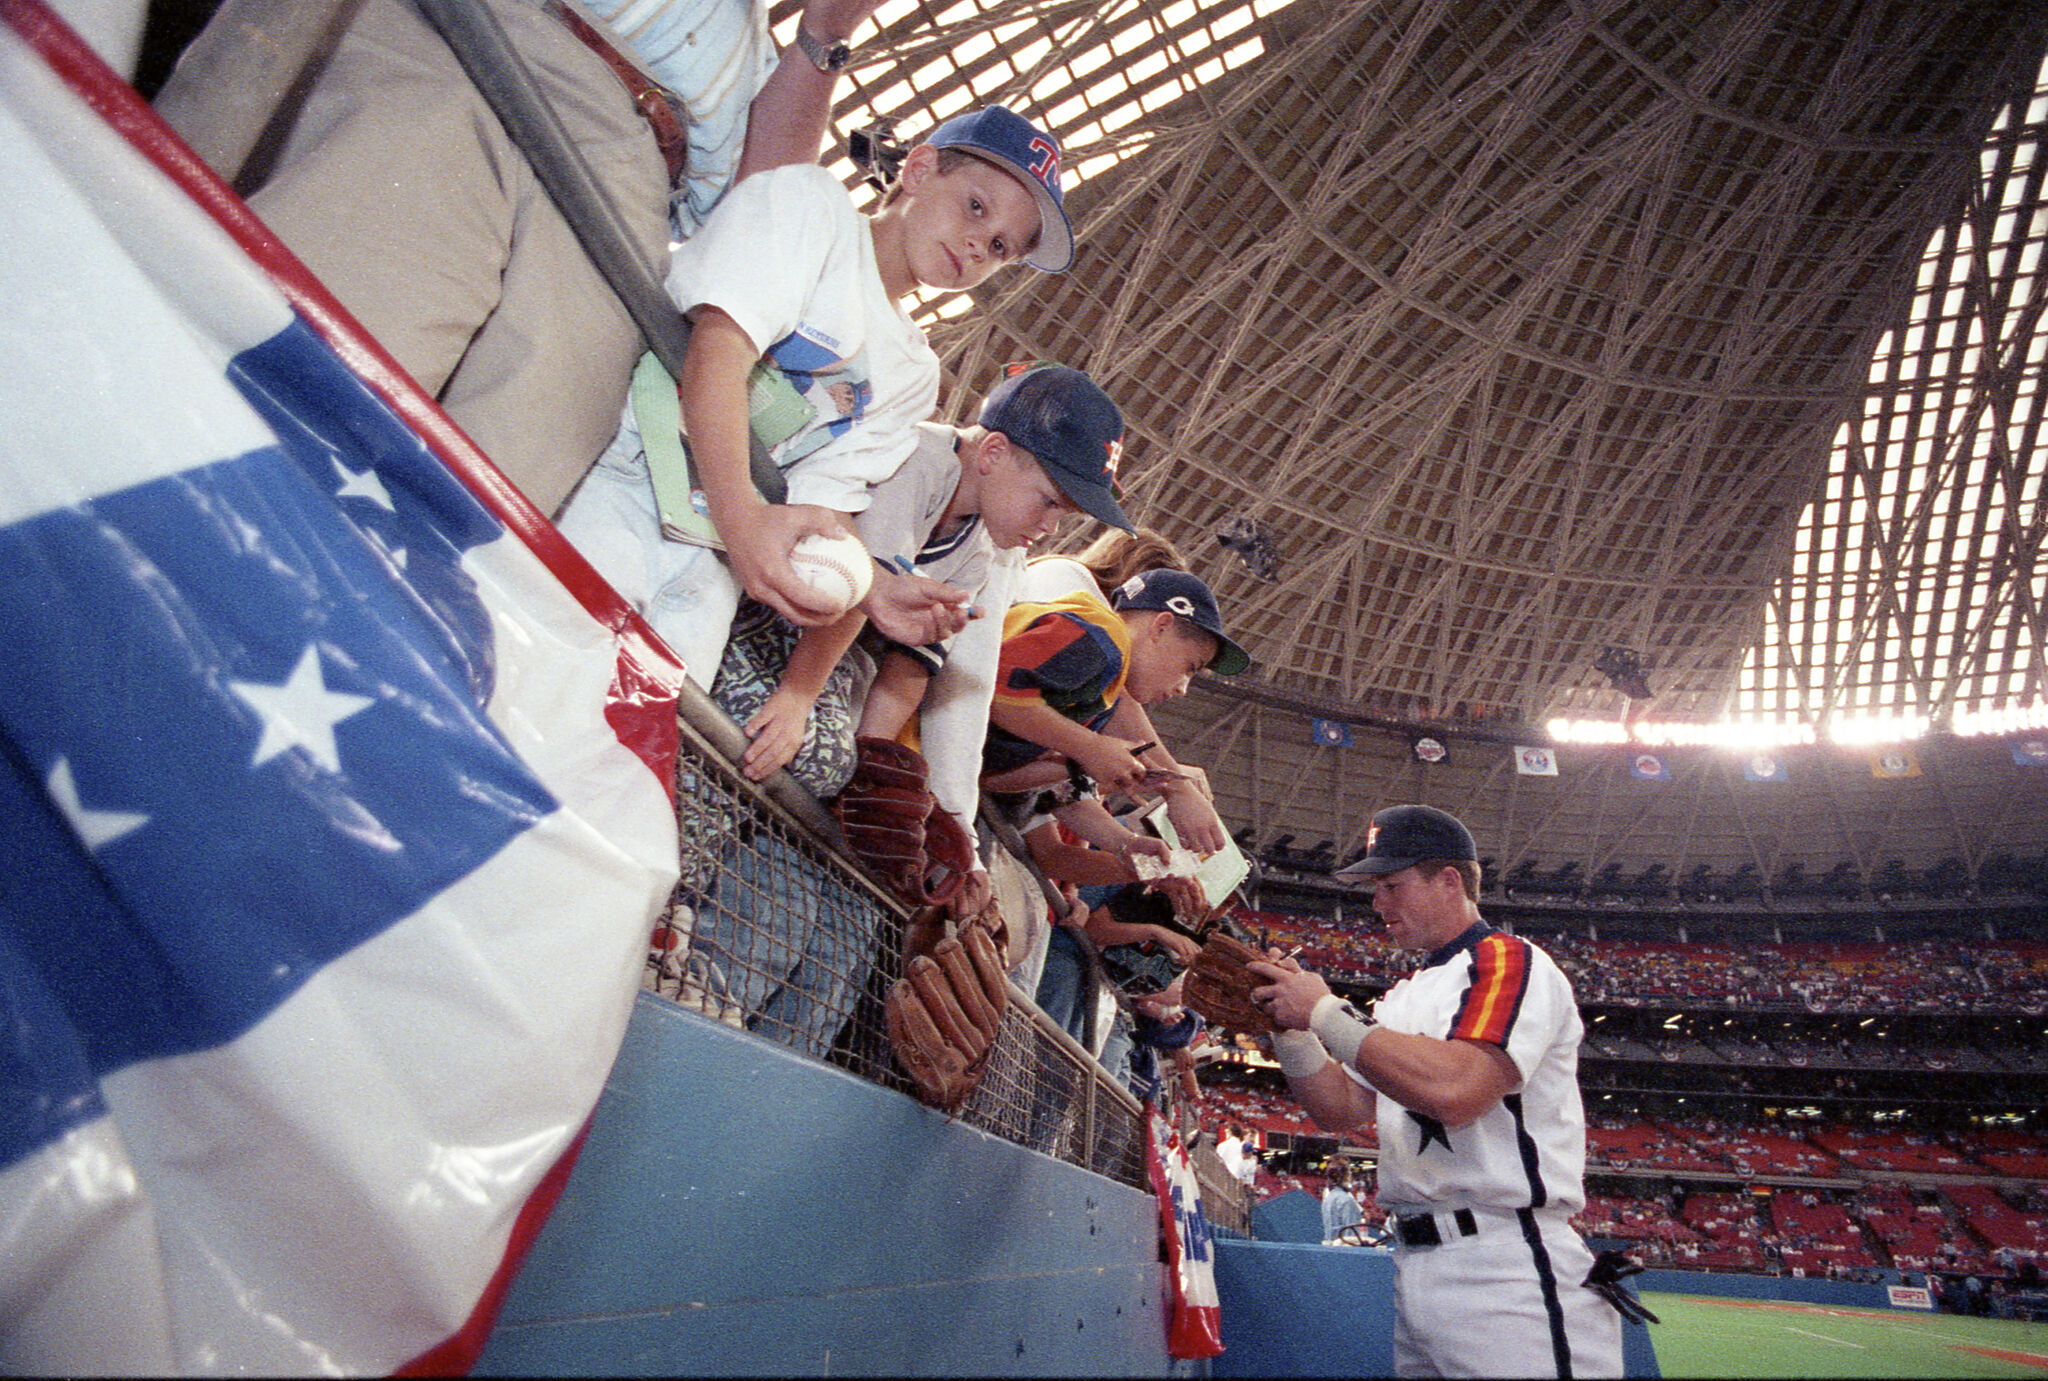 Houston Texas USA, circa 1989: Crowd watches Houston Astros